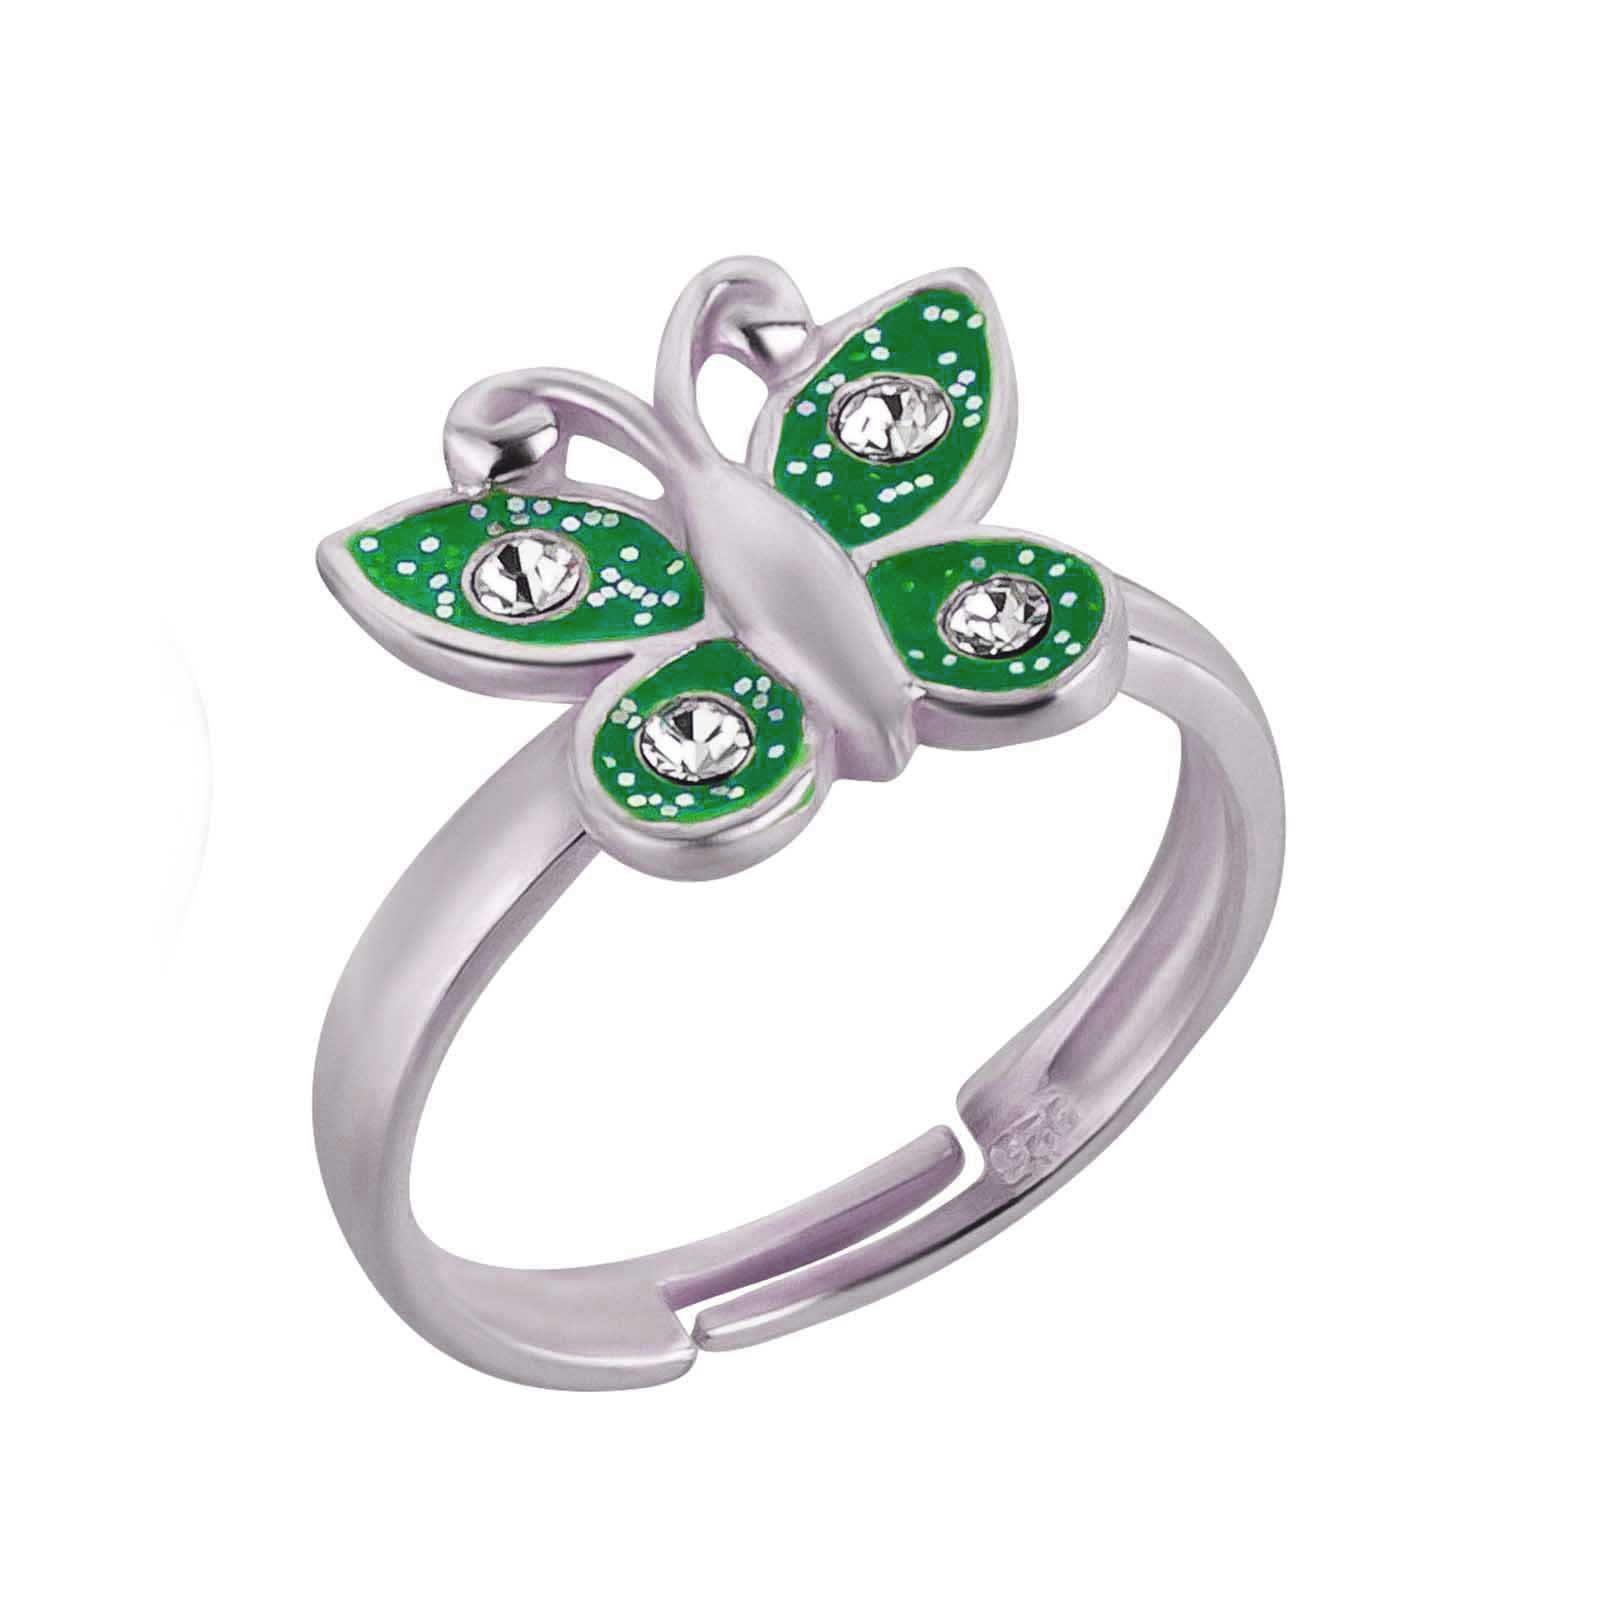 Silber, Kinder Geschenk Mädchen Schmetterling Grün 925 schmuck23 Kinderschmuck Ring Silberring Fingerring